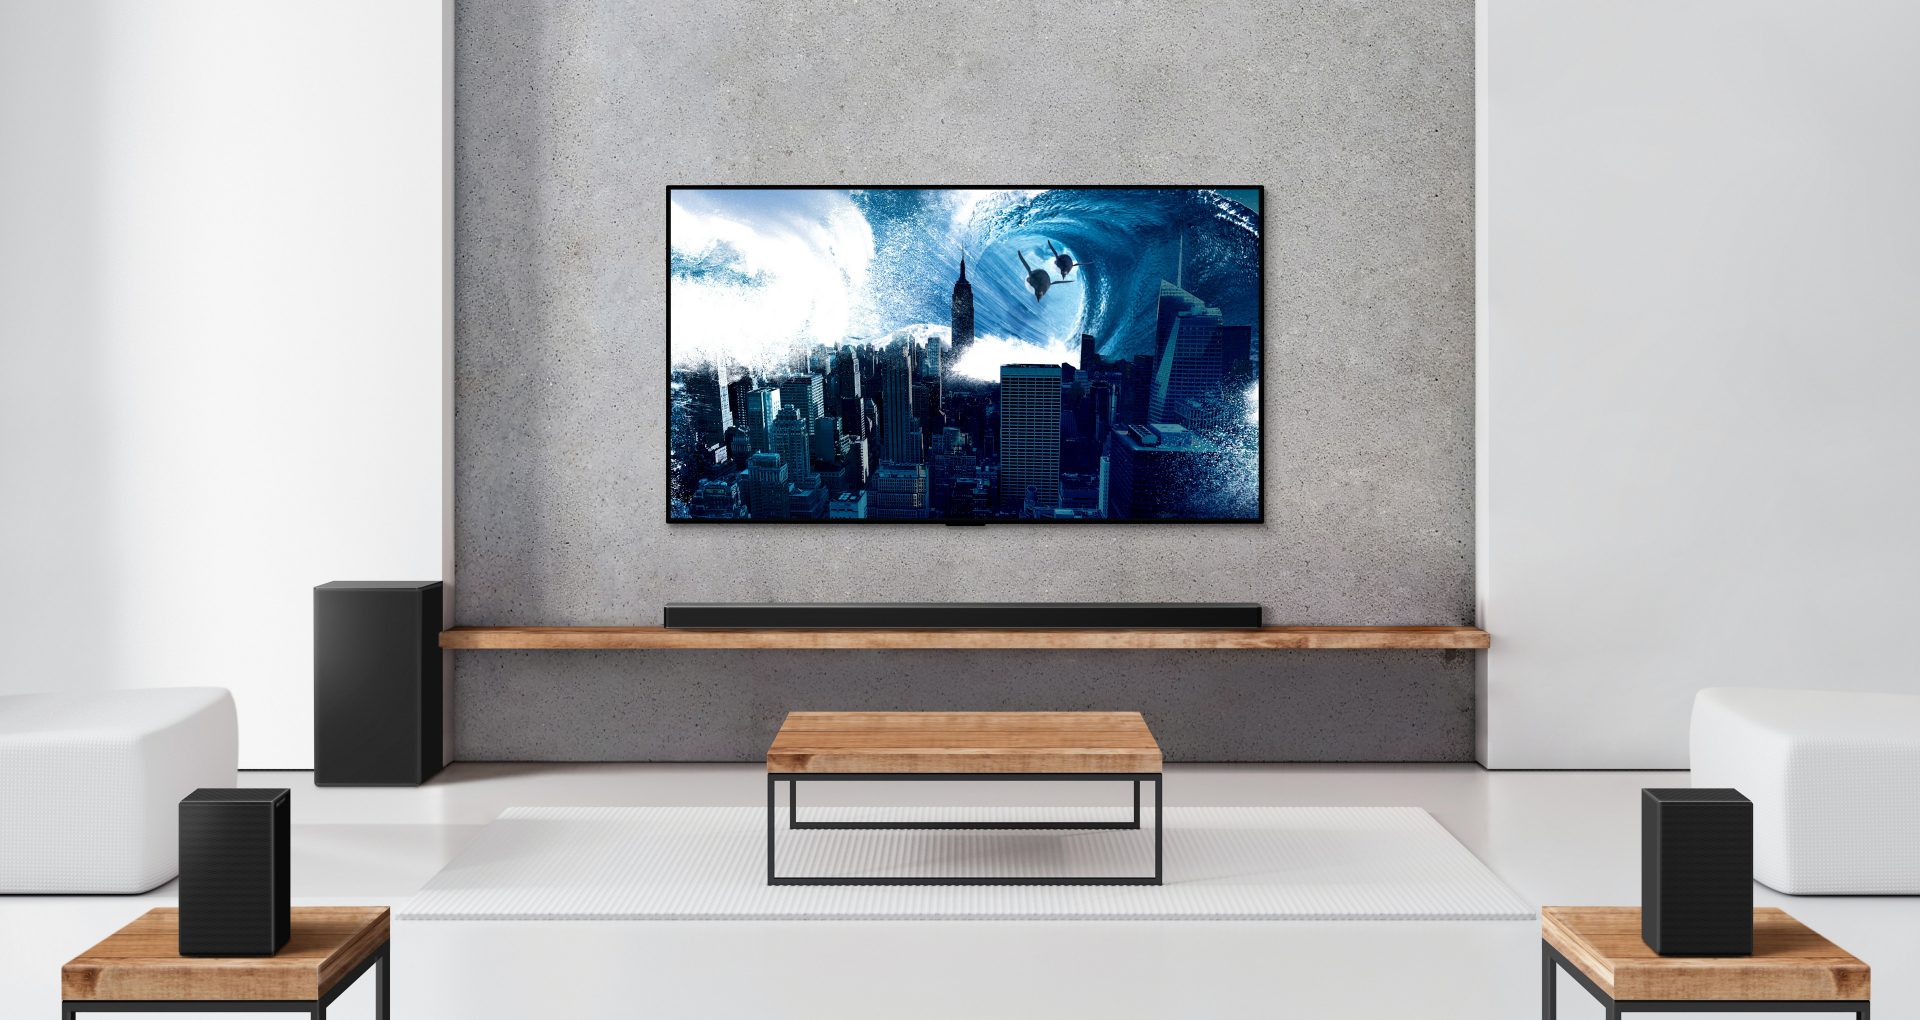 LG’s nye lydplanker samarbeider bedre med TV-en